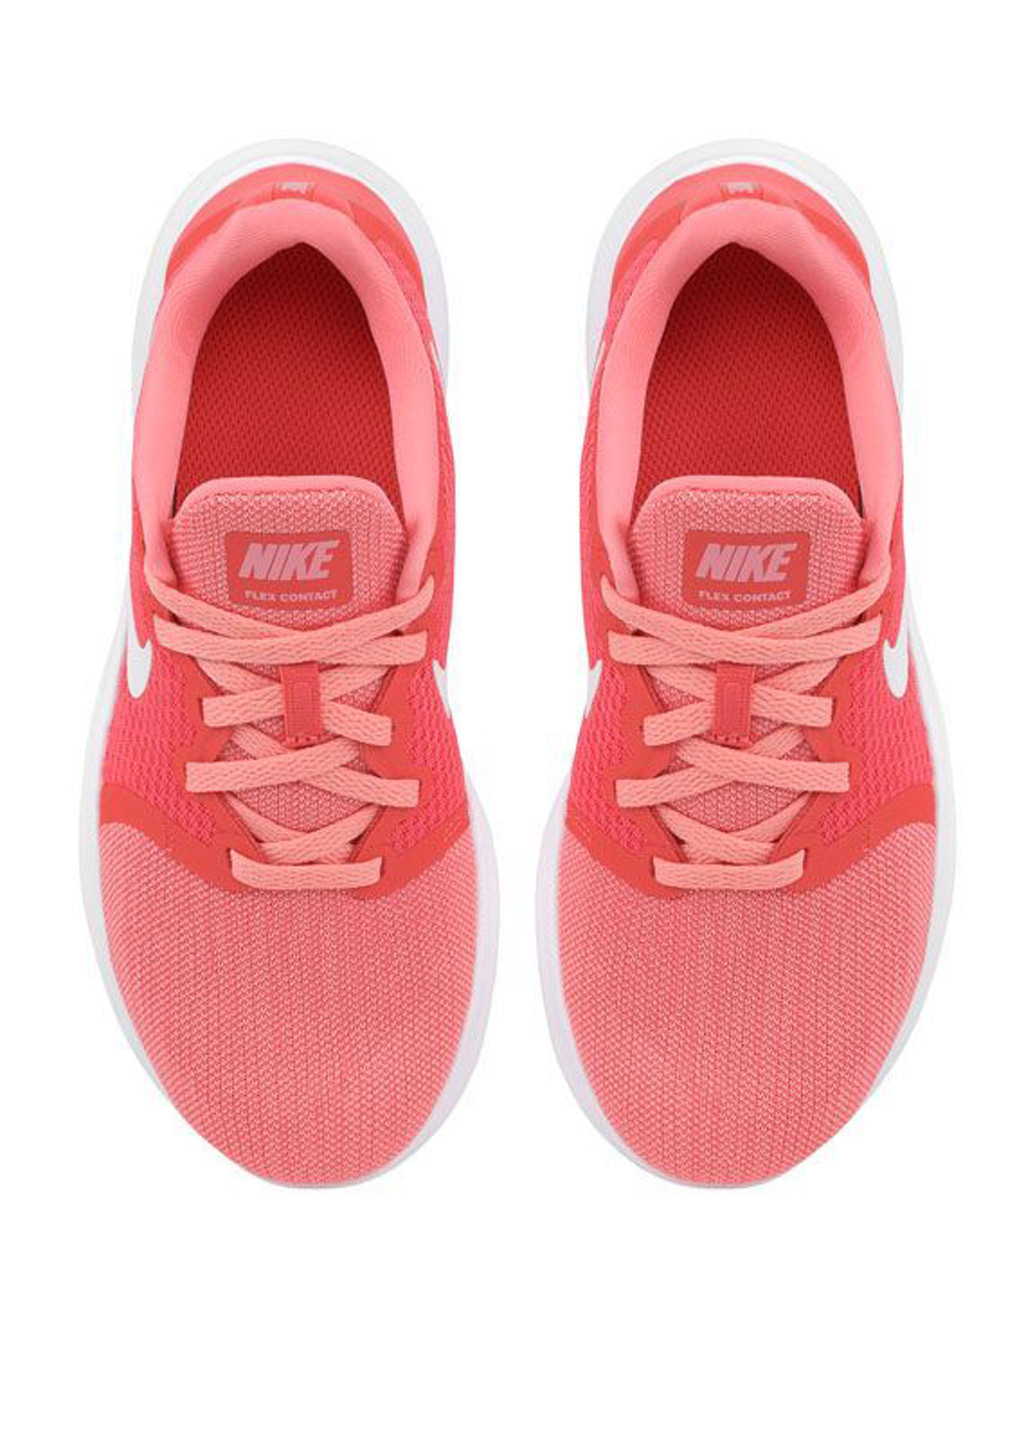 Коралловые демисезонные кроссовки Nike WMNS FLEX CONTACT 2